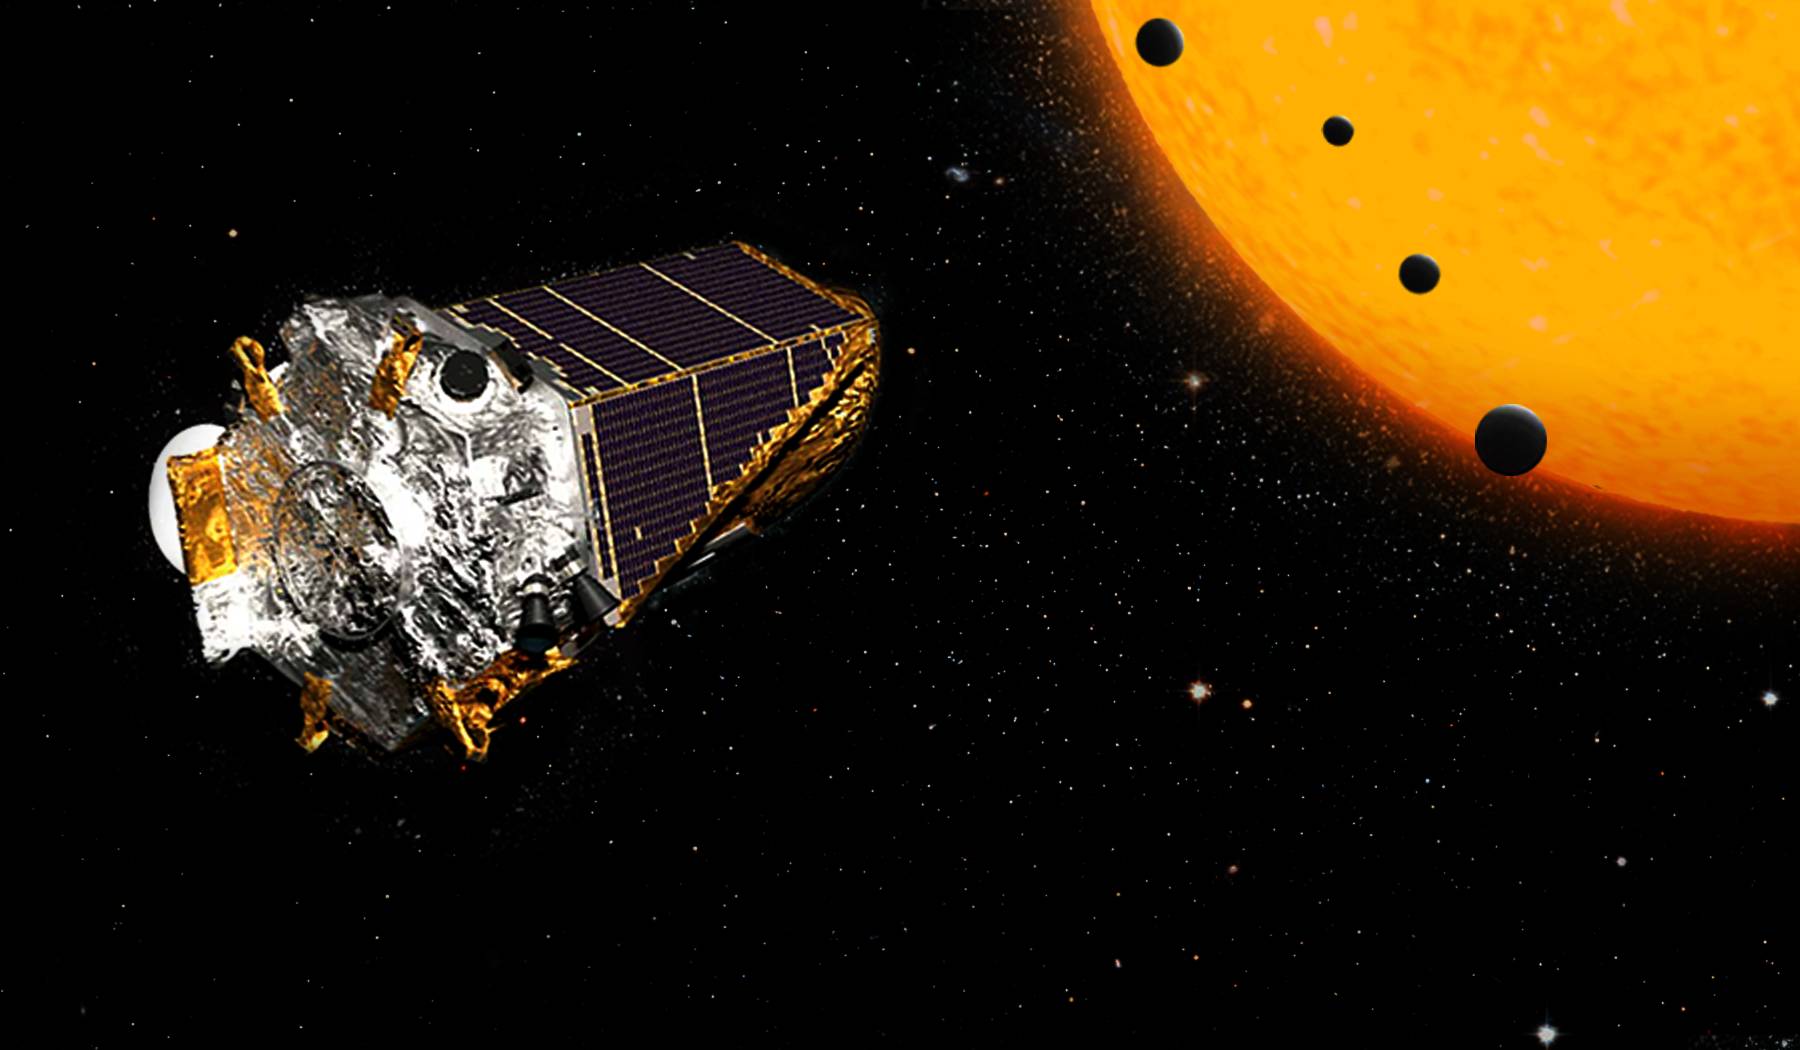 67北京时间12月15日凌晨2时 nasa将宣布开普勒太空望远镜的最新发现